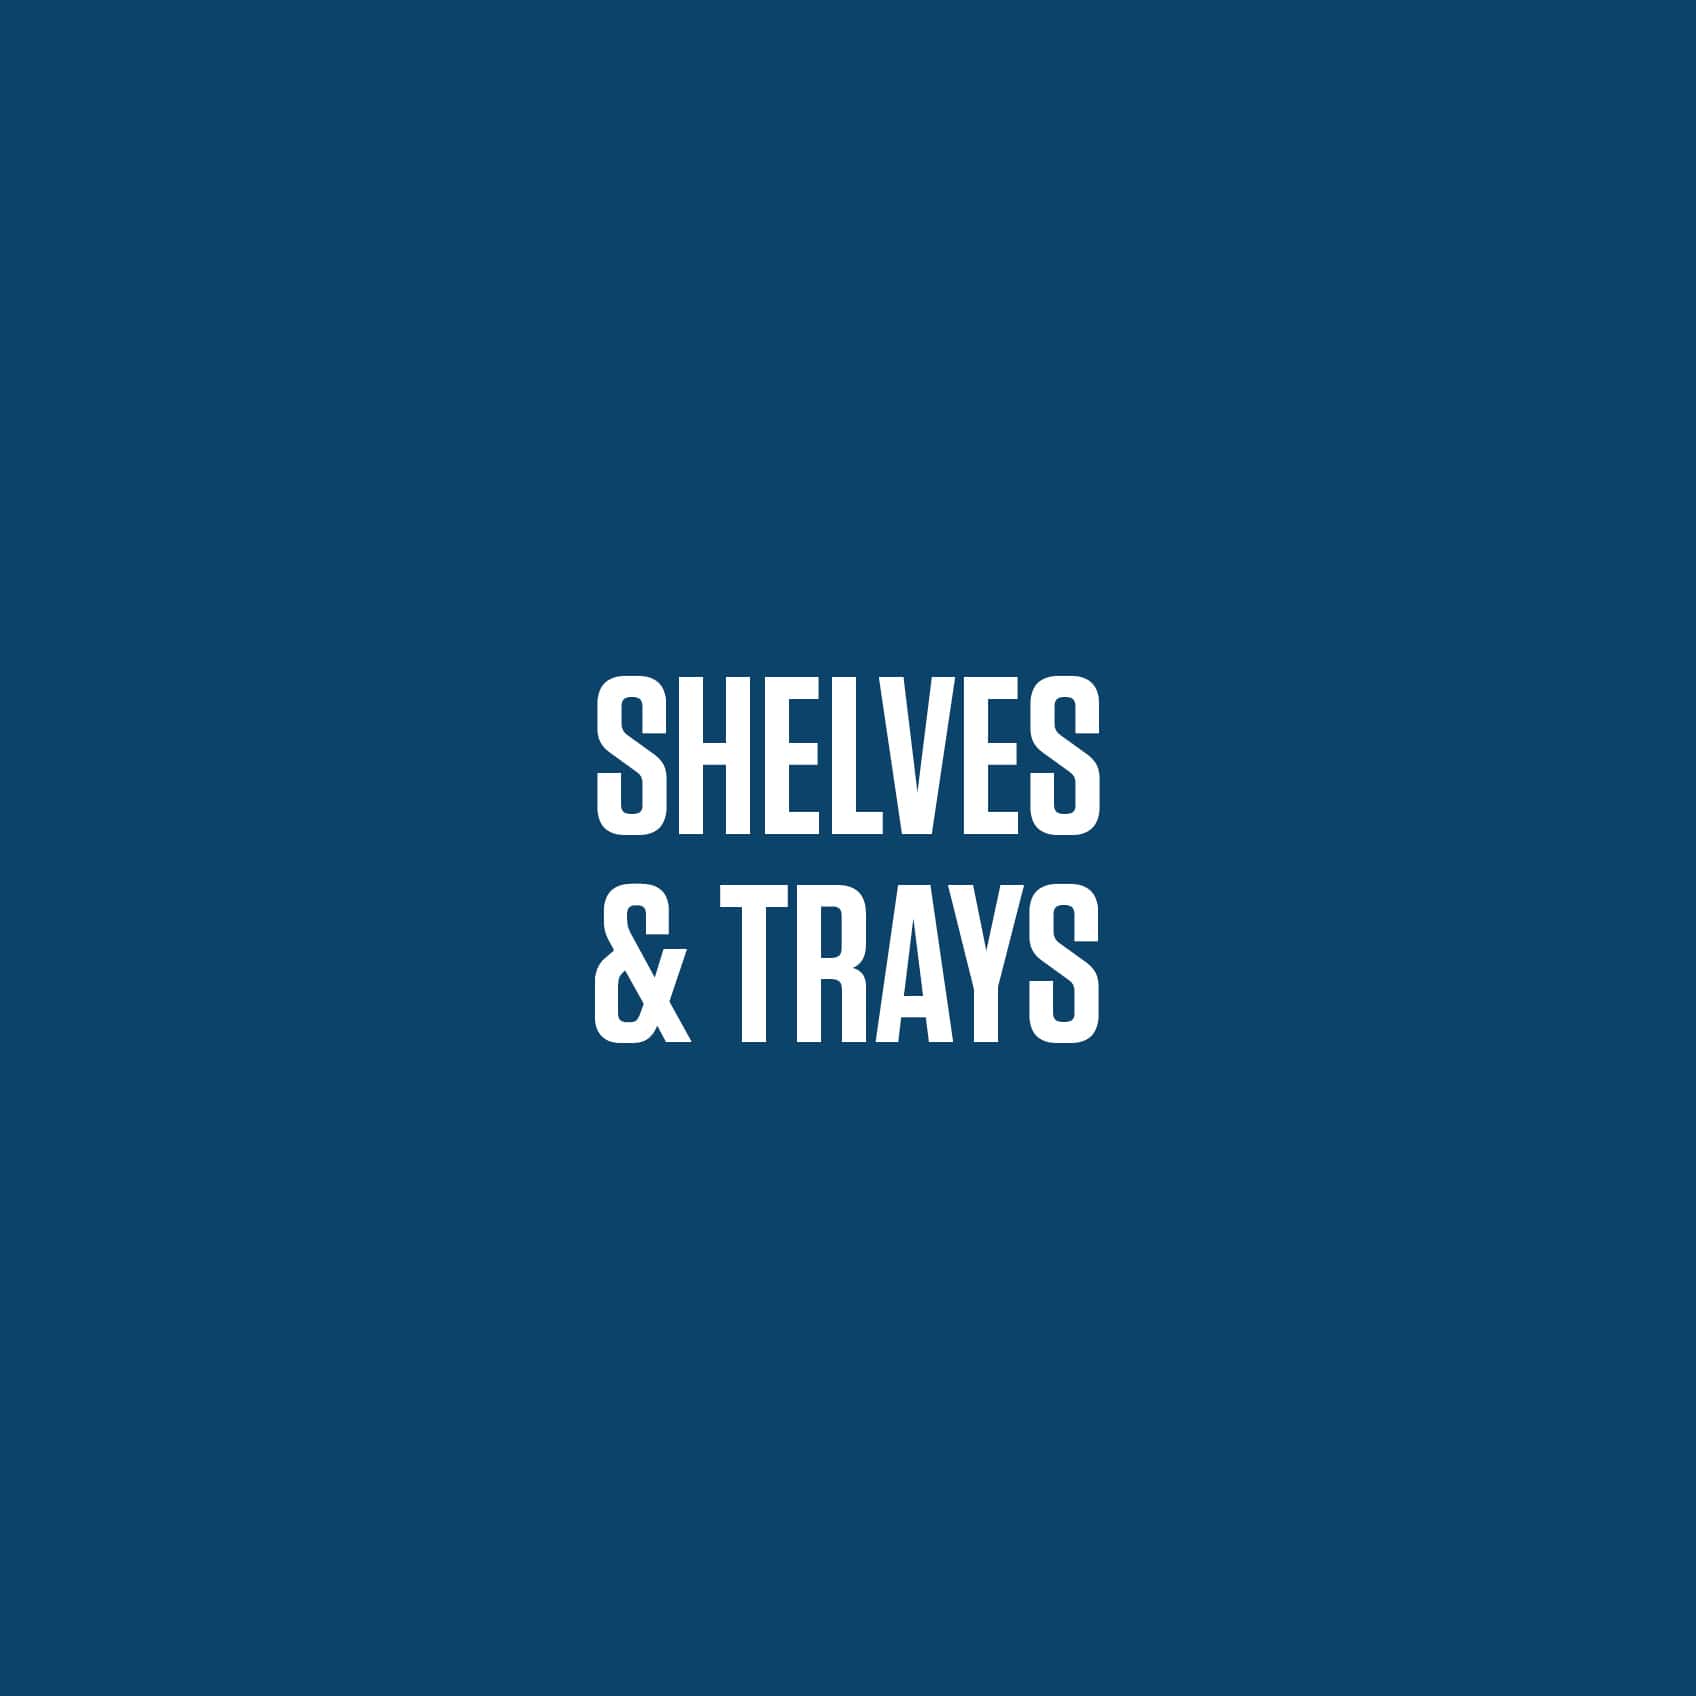 Shelves & Trays